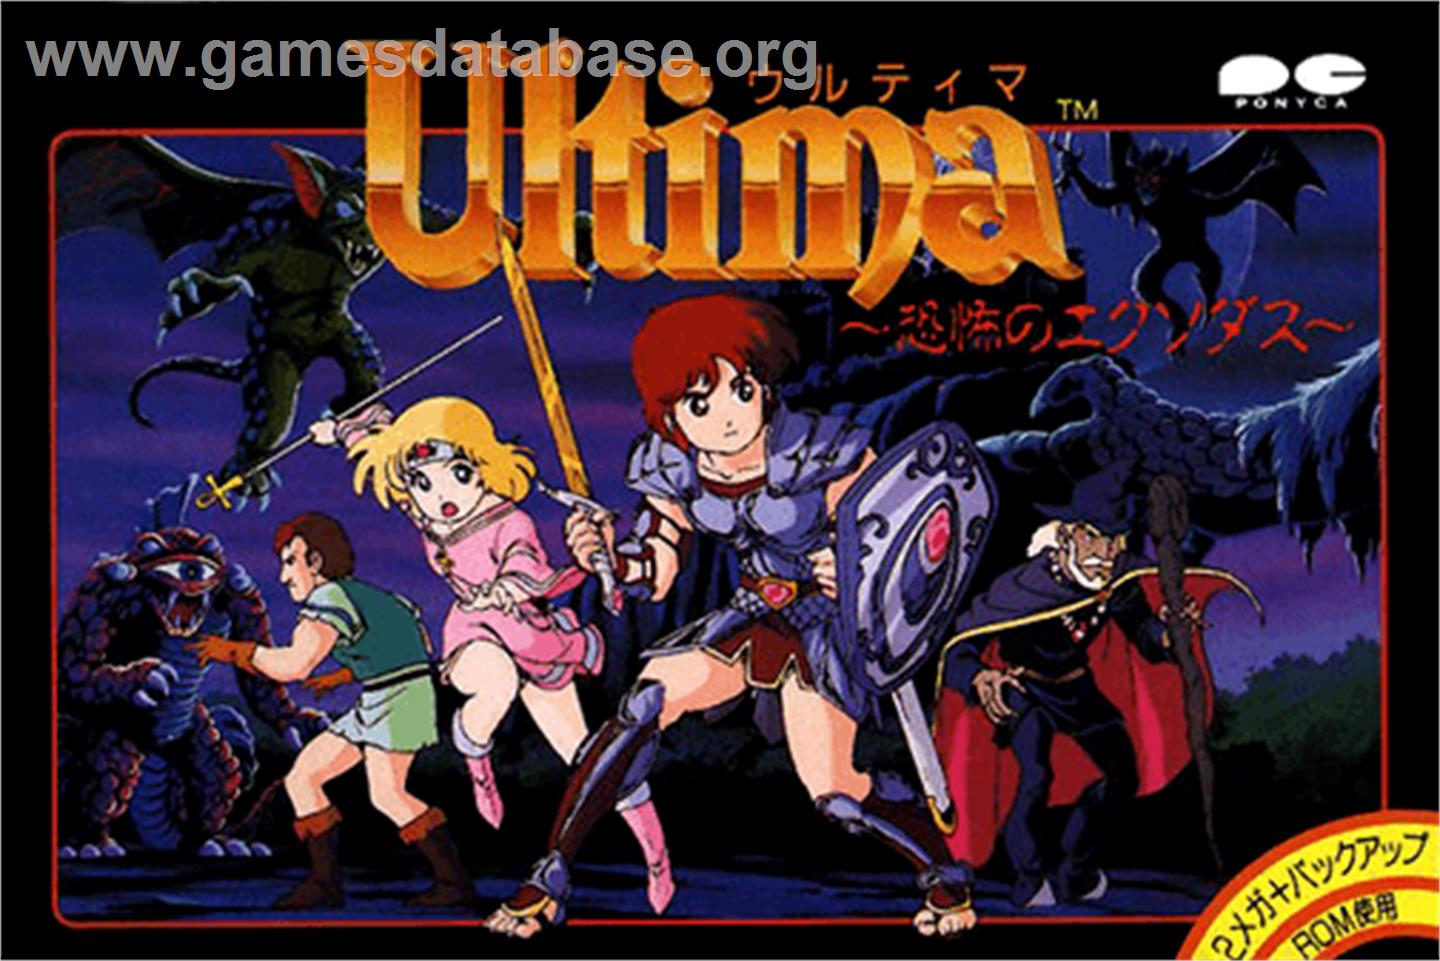 Ultima III: Exodus - Nintendo NES - Artwork - Box